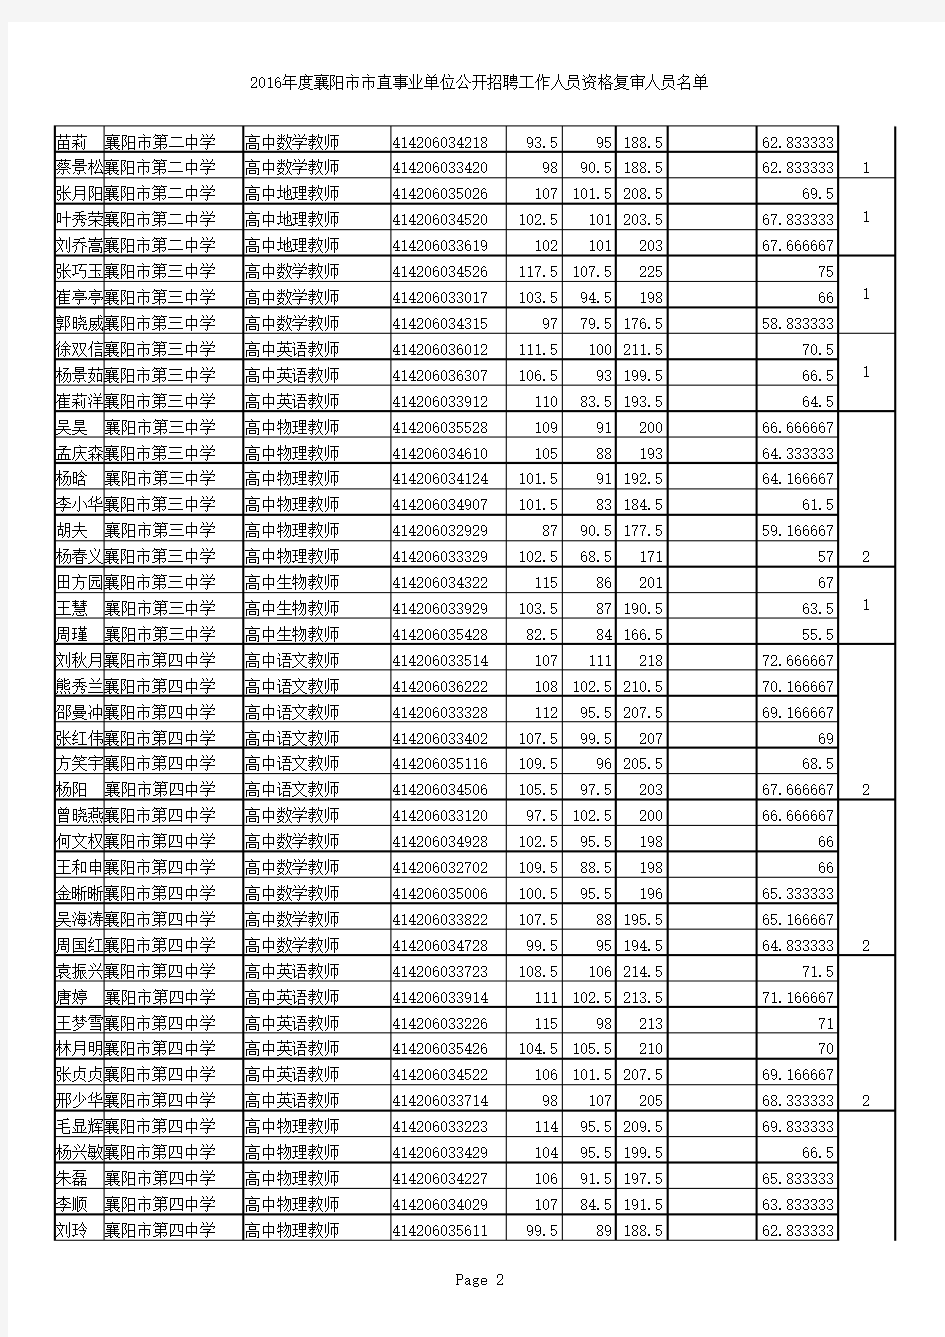 2016年度襄阳市市直事业单位公开招聘工作人员资格复审人员名单